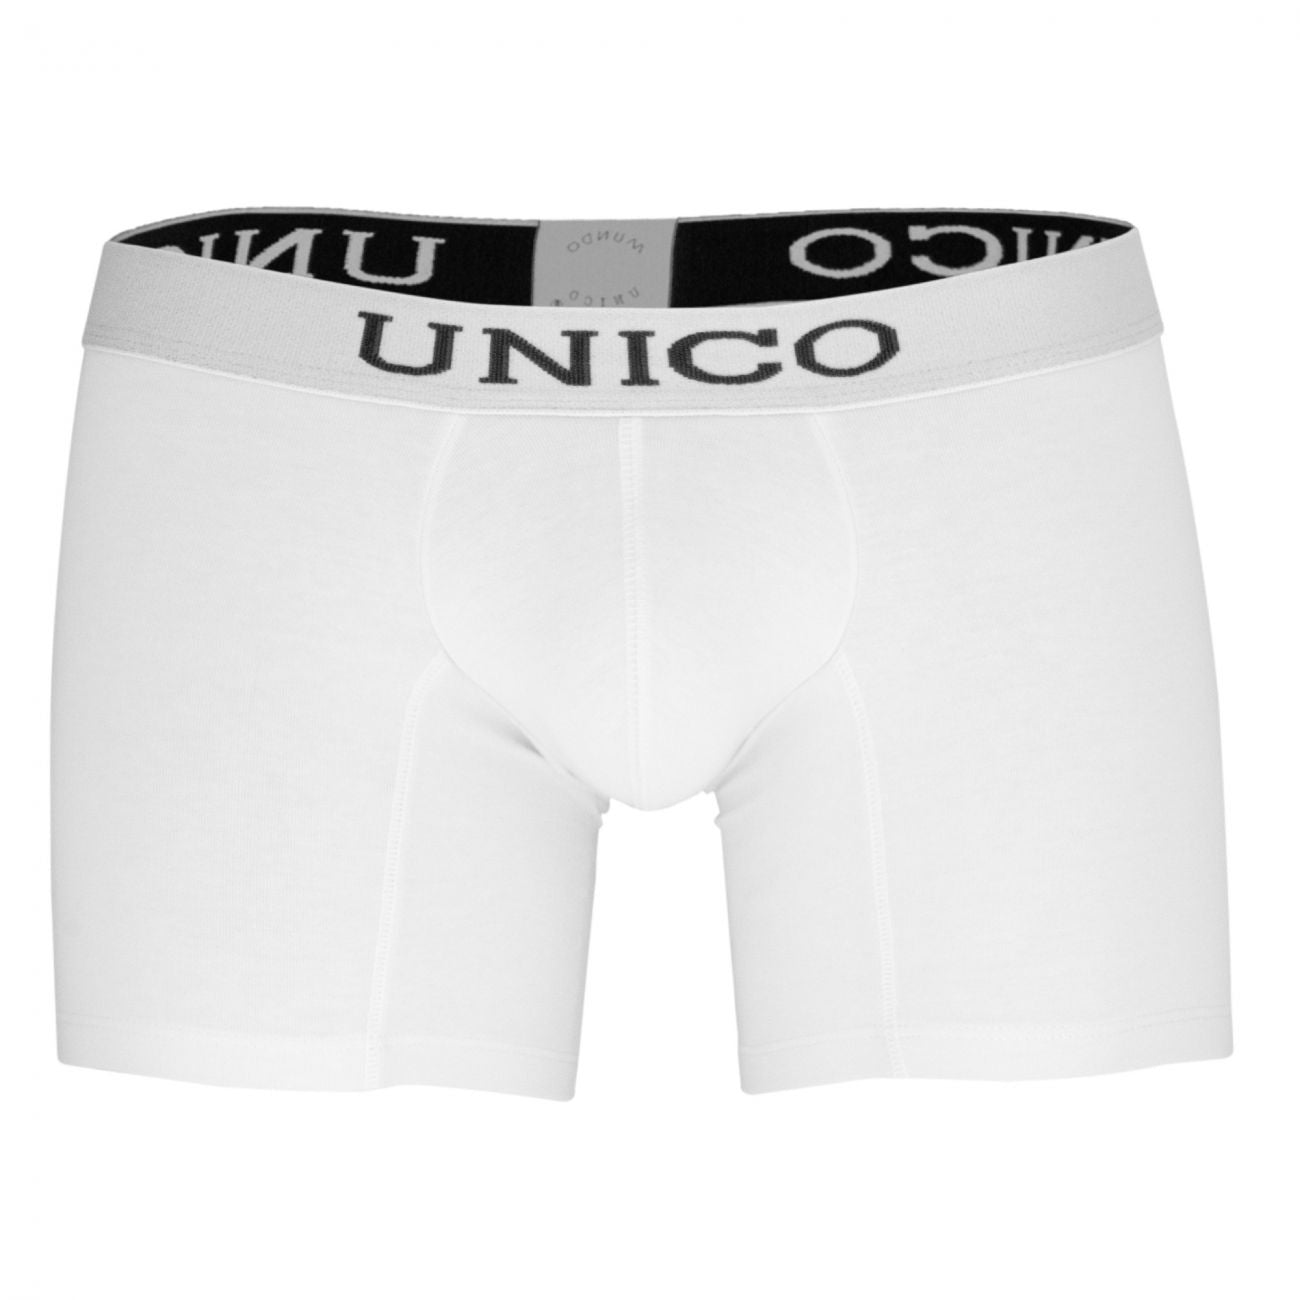 Unico (9612010020100) Boxer Briefs Cristalino Cotton